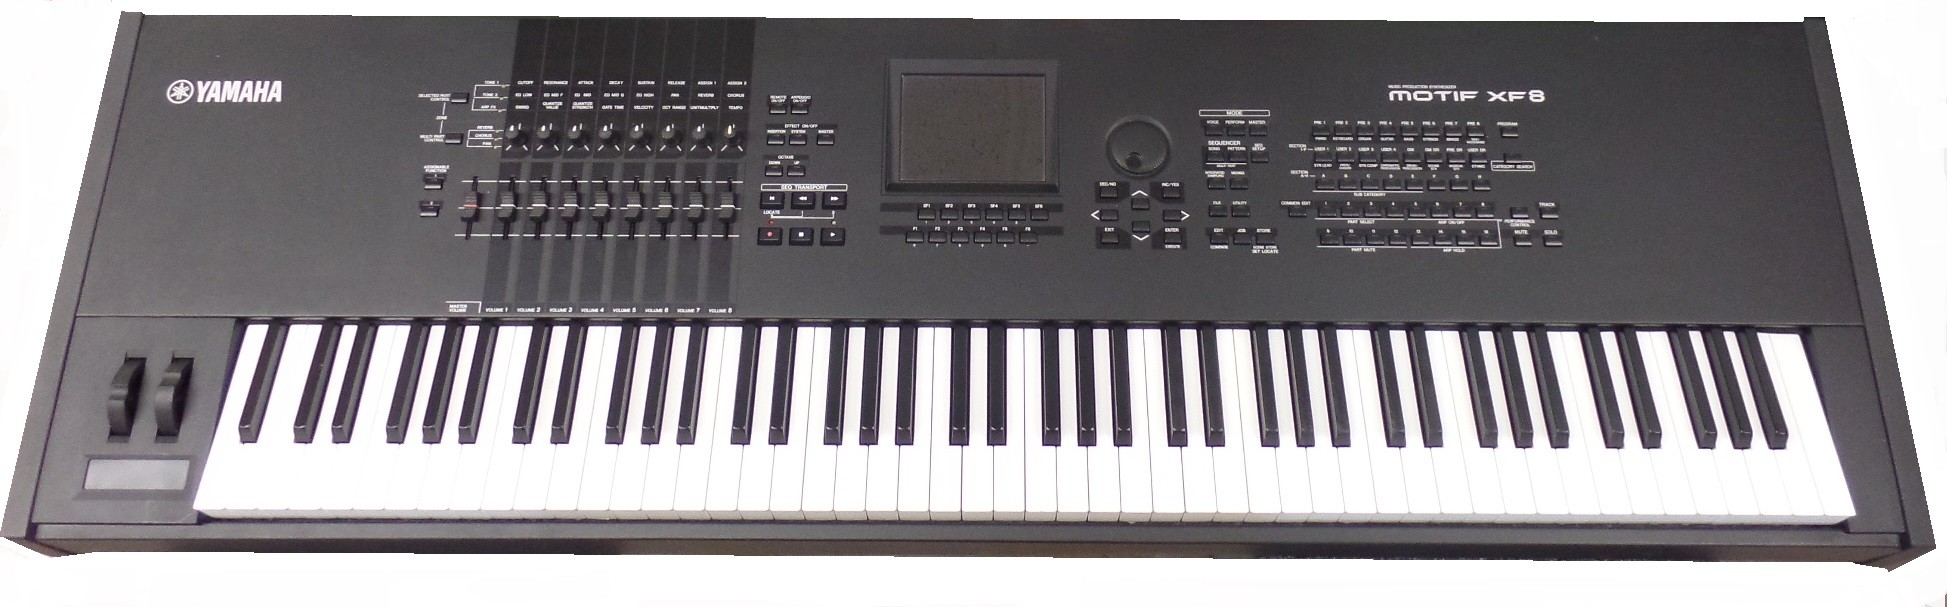 Yamaha Motif XF8 Production Workstation Synthesizer 88-key keyboard